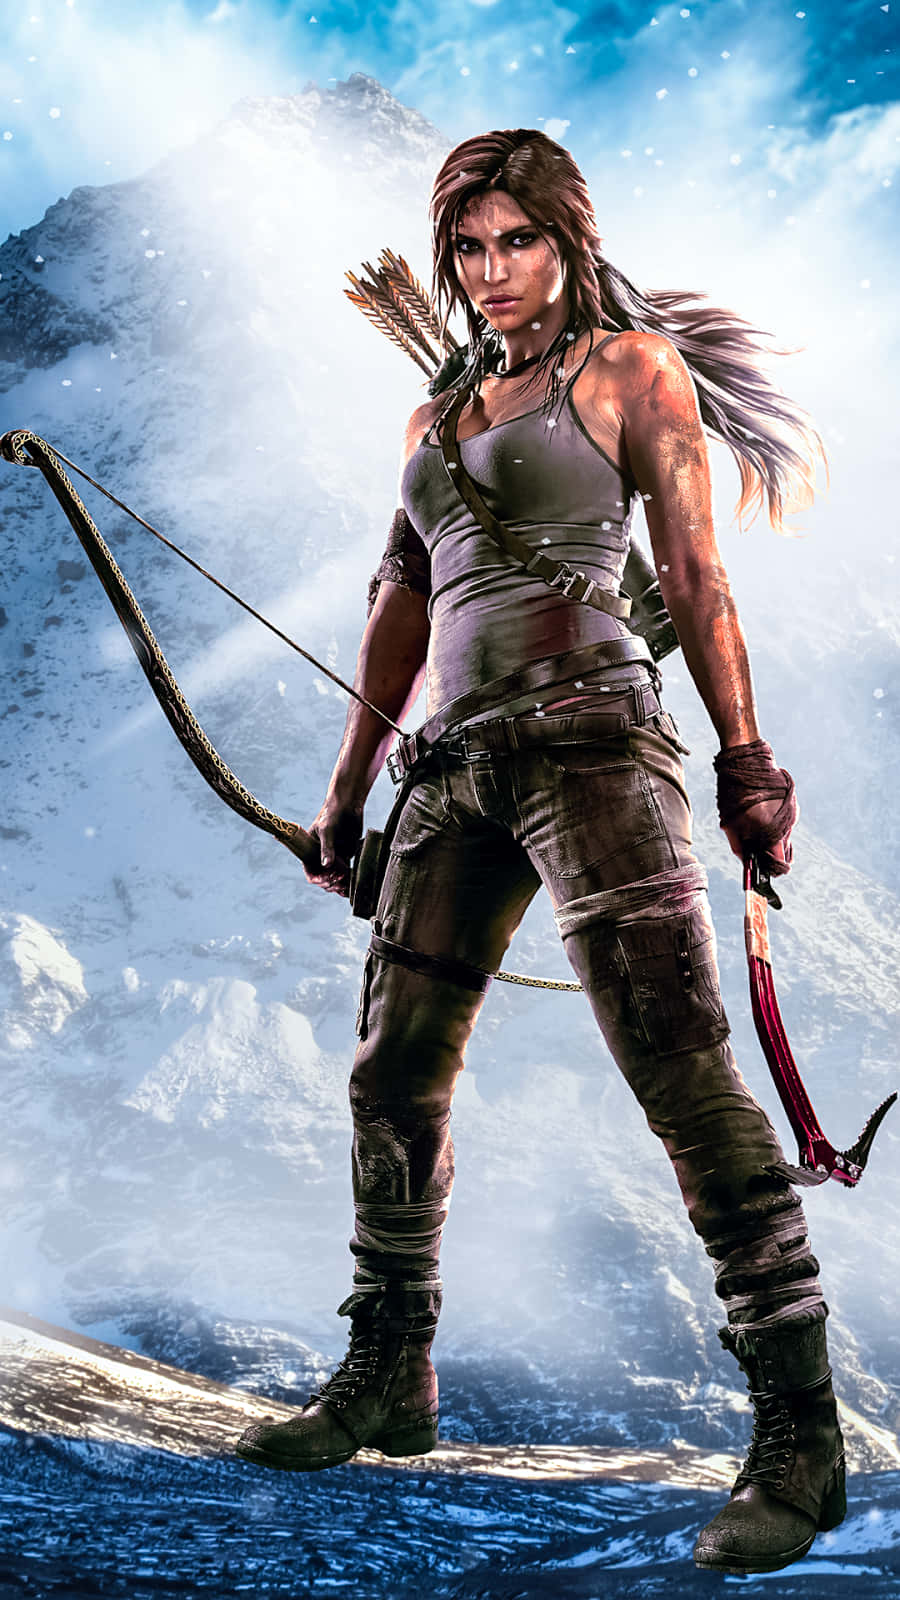 Telefon Tomb Raider 900 X 1600 Wallpaper